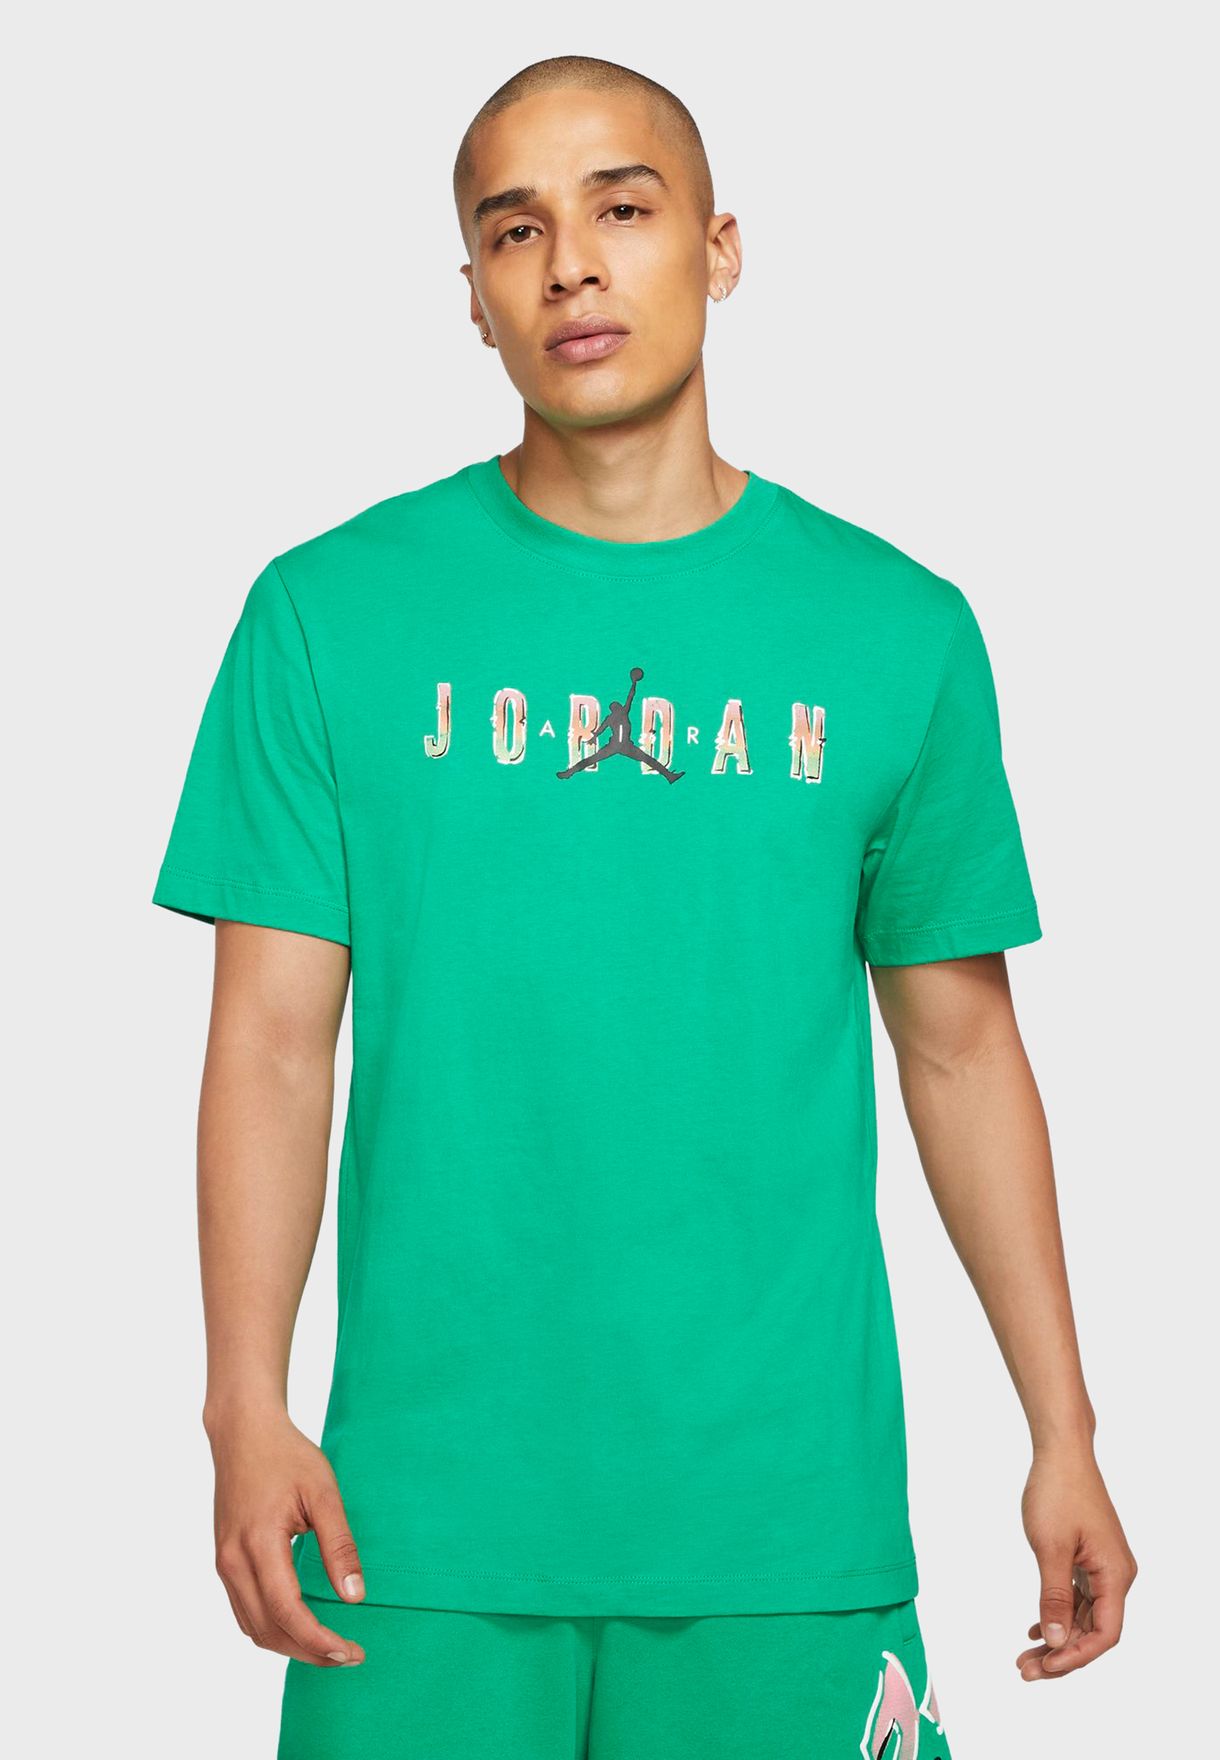 green jordans shirt